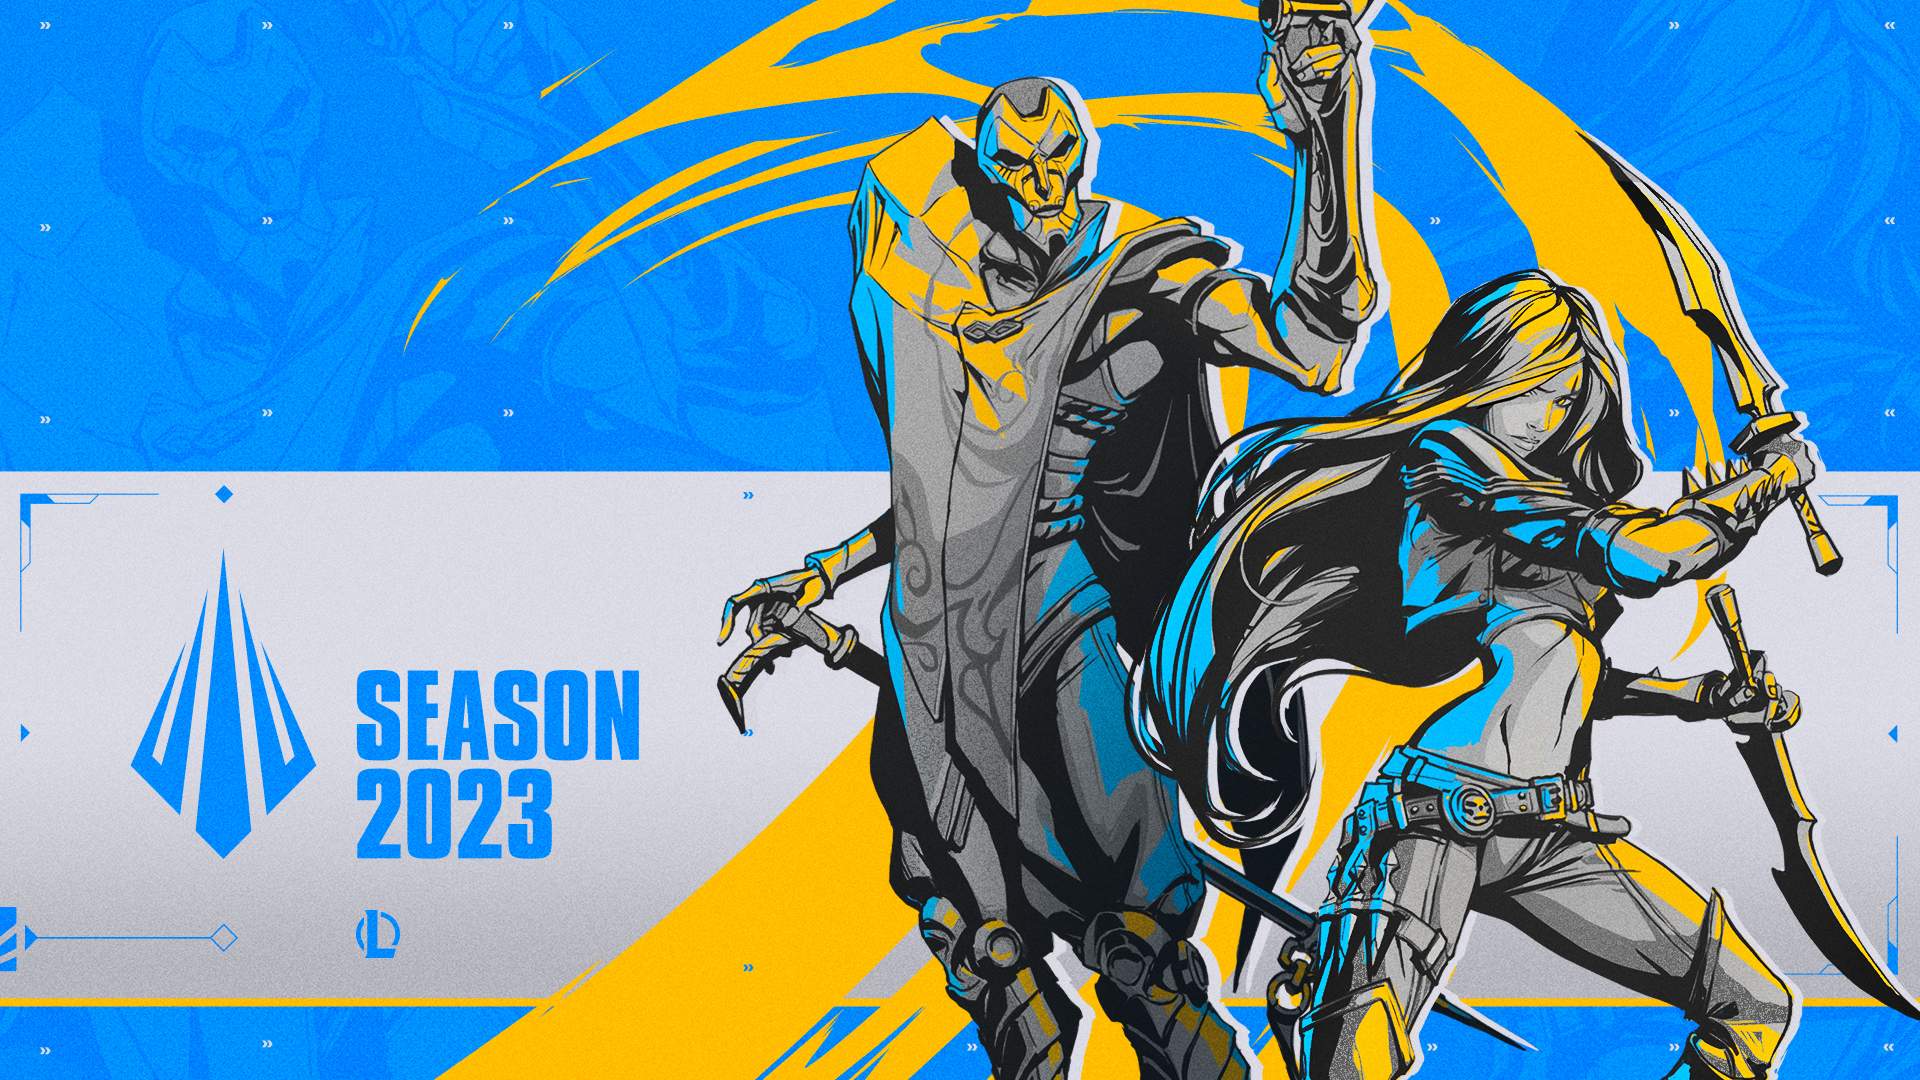 Riot Games dá início a Temporada 2023 de League of Legends